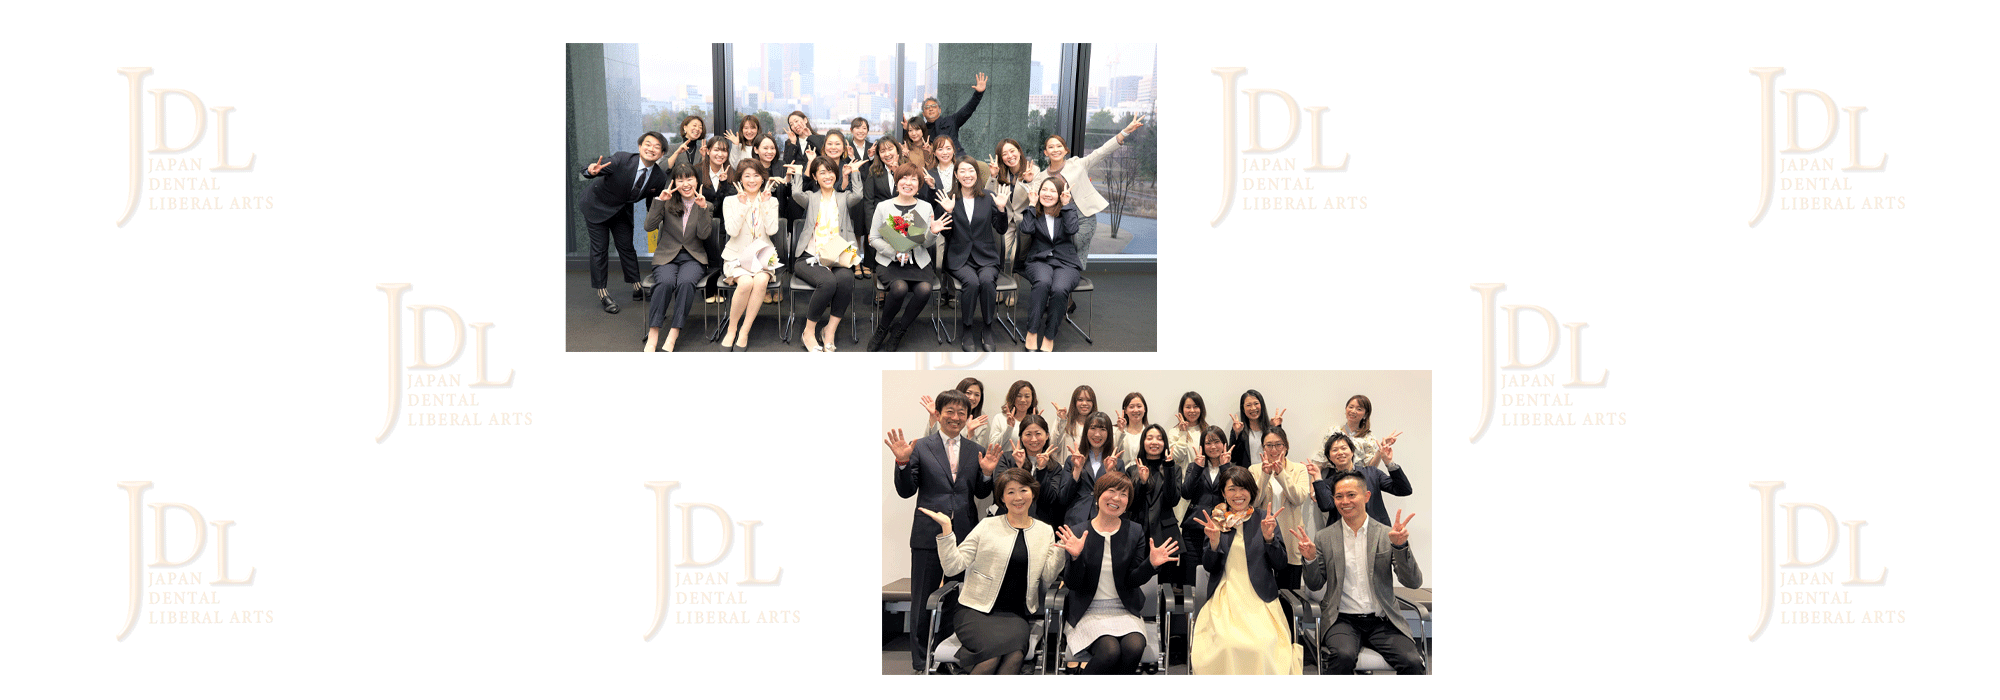 日本歯科社会教養推進機構（JDL）